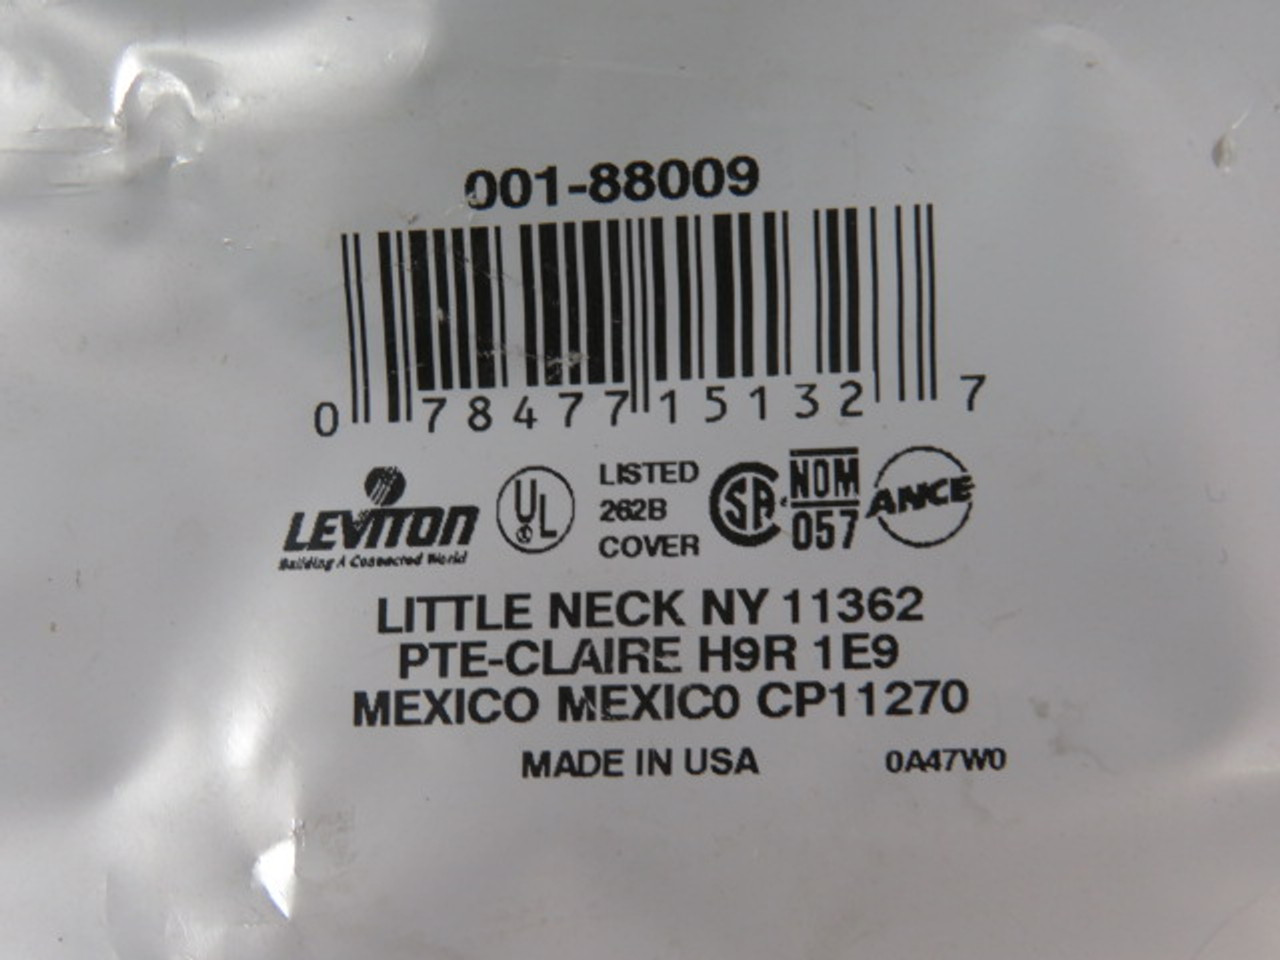 Leviton 001-88009 2-Gang Toggle Switch Wall Plate White ! NWB !